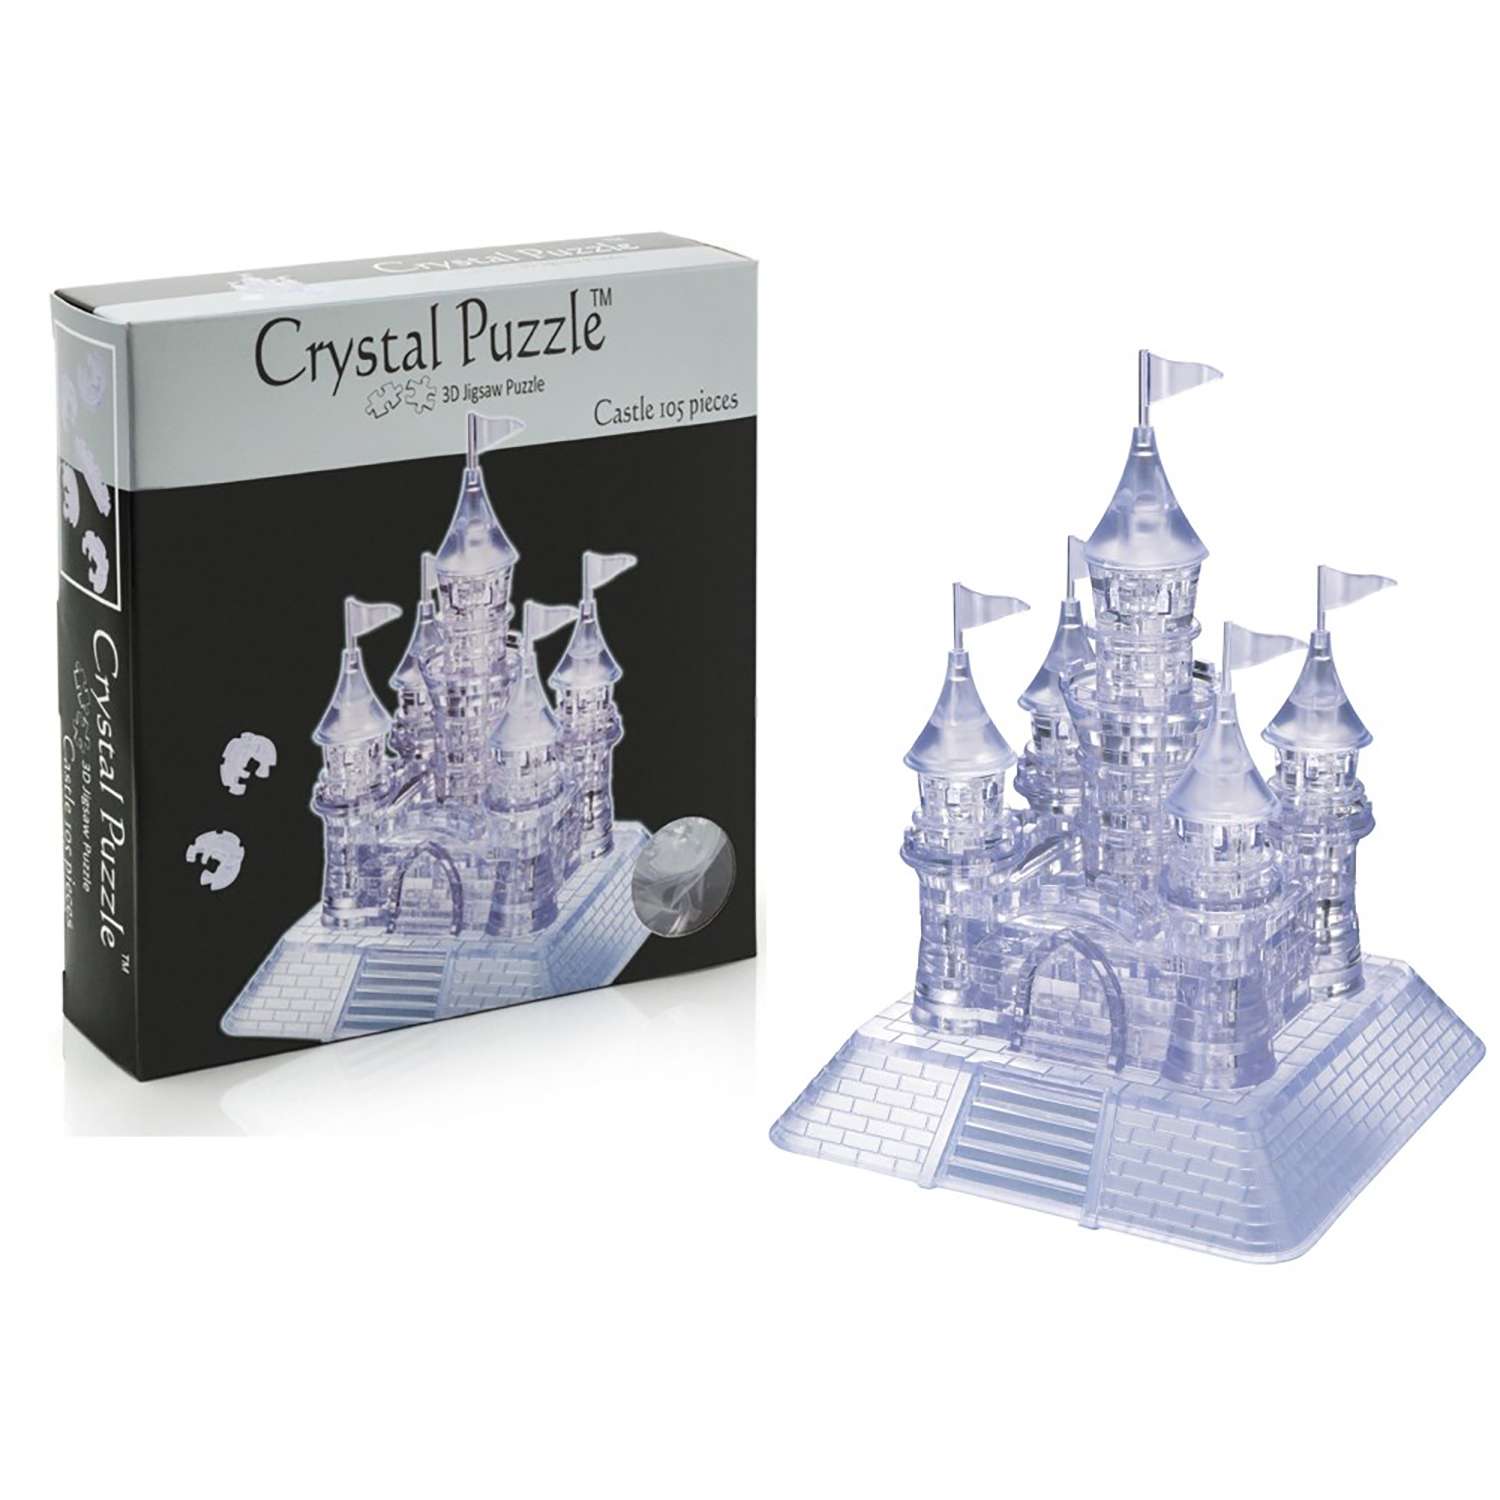 3D-пазл Crystal Puzzle IQ игра для детей кристальный Замок 105 деталей - фото 5